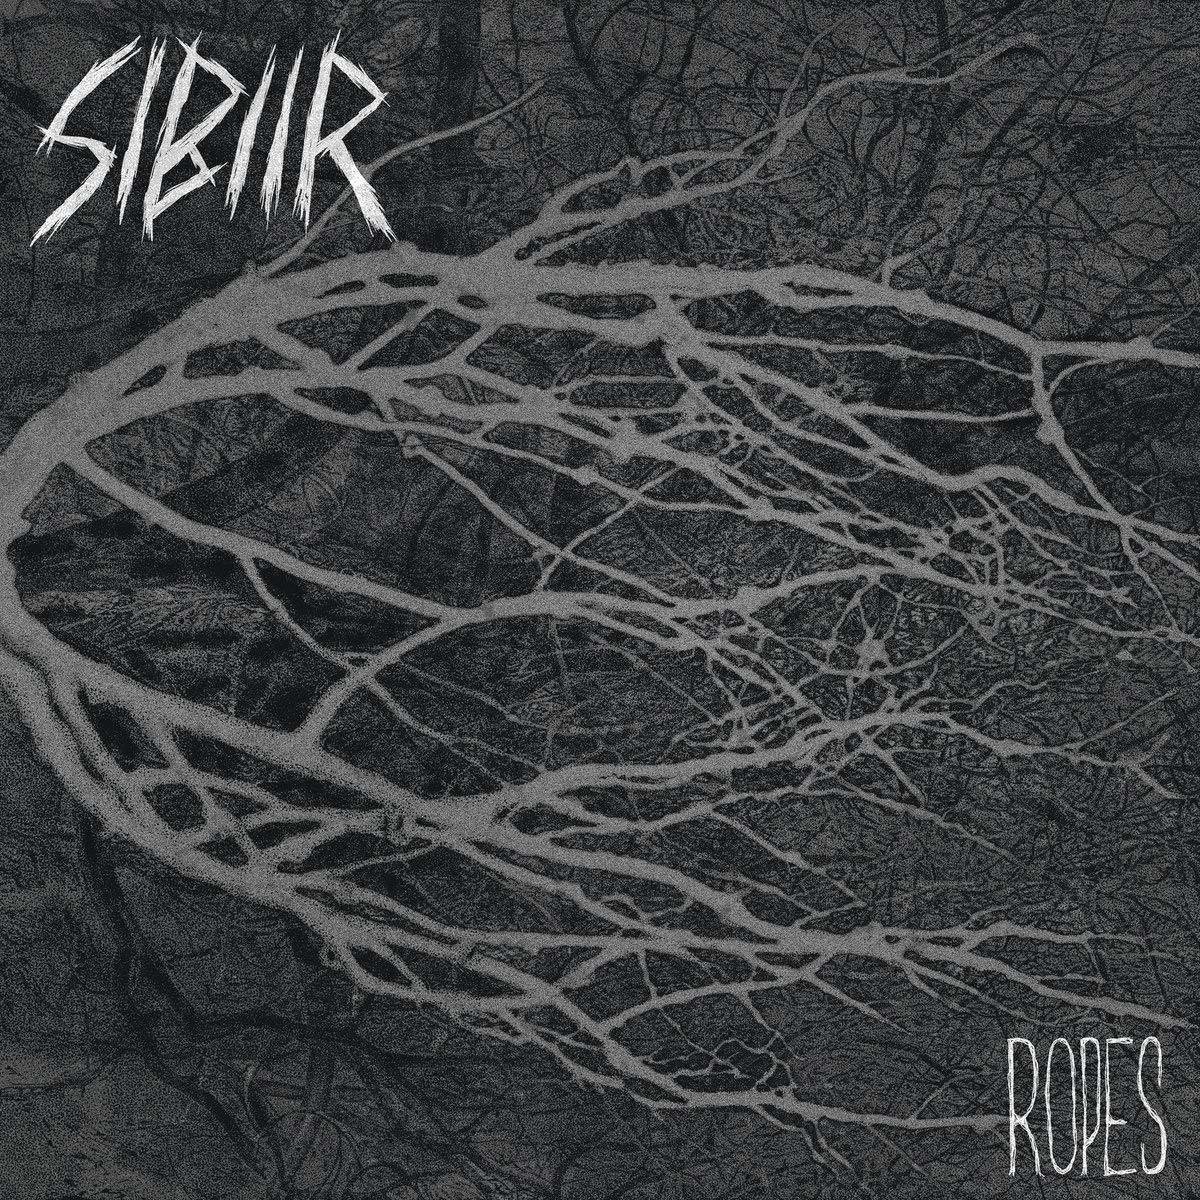 Płyta winylowa Sibiir - Ropes (LP)